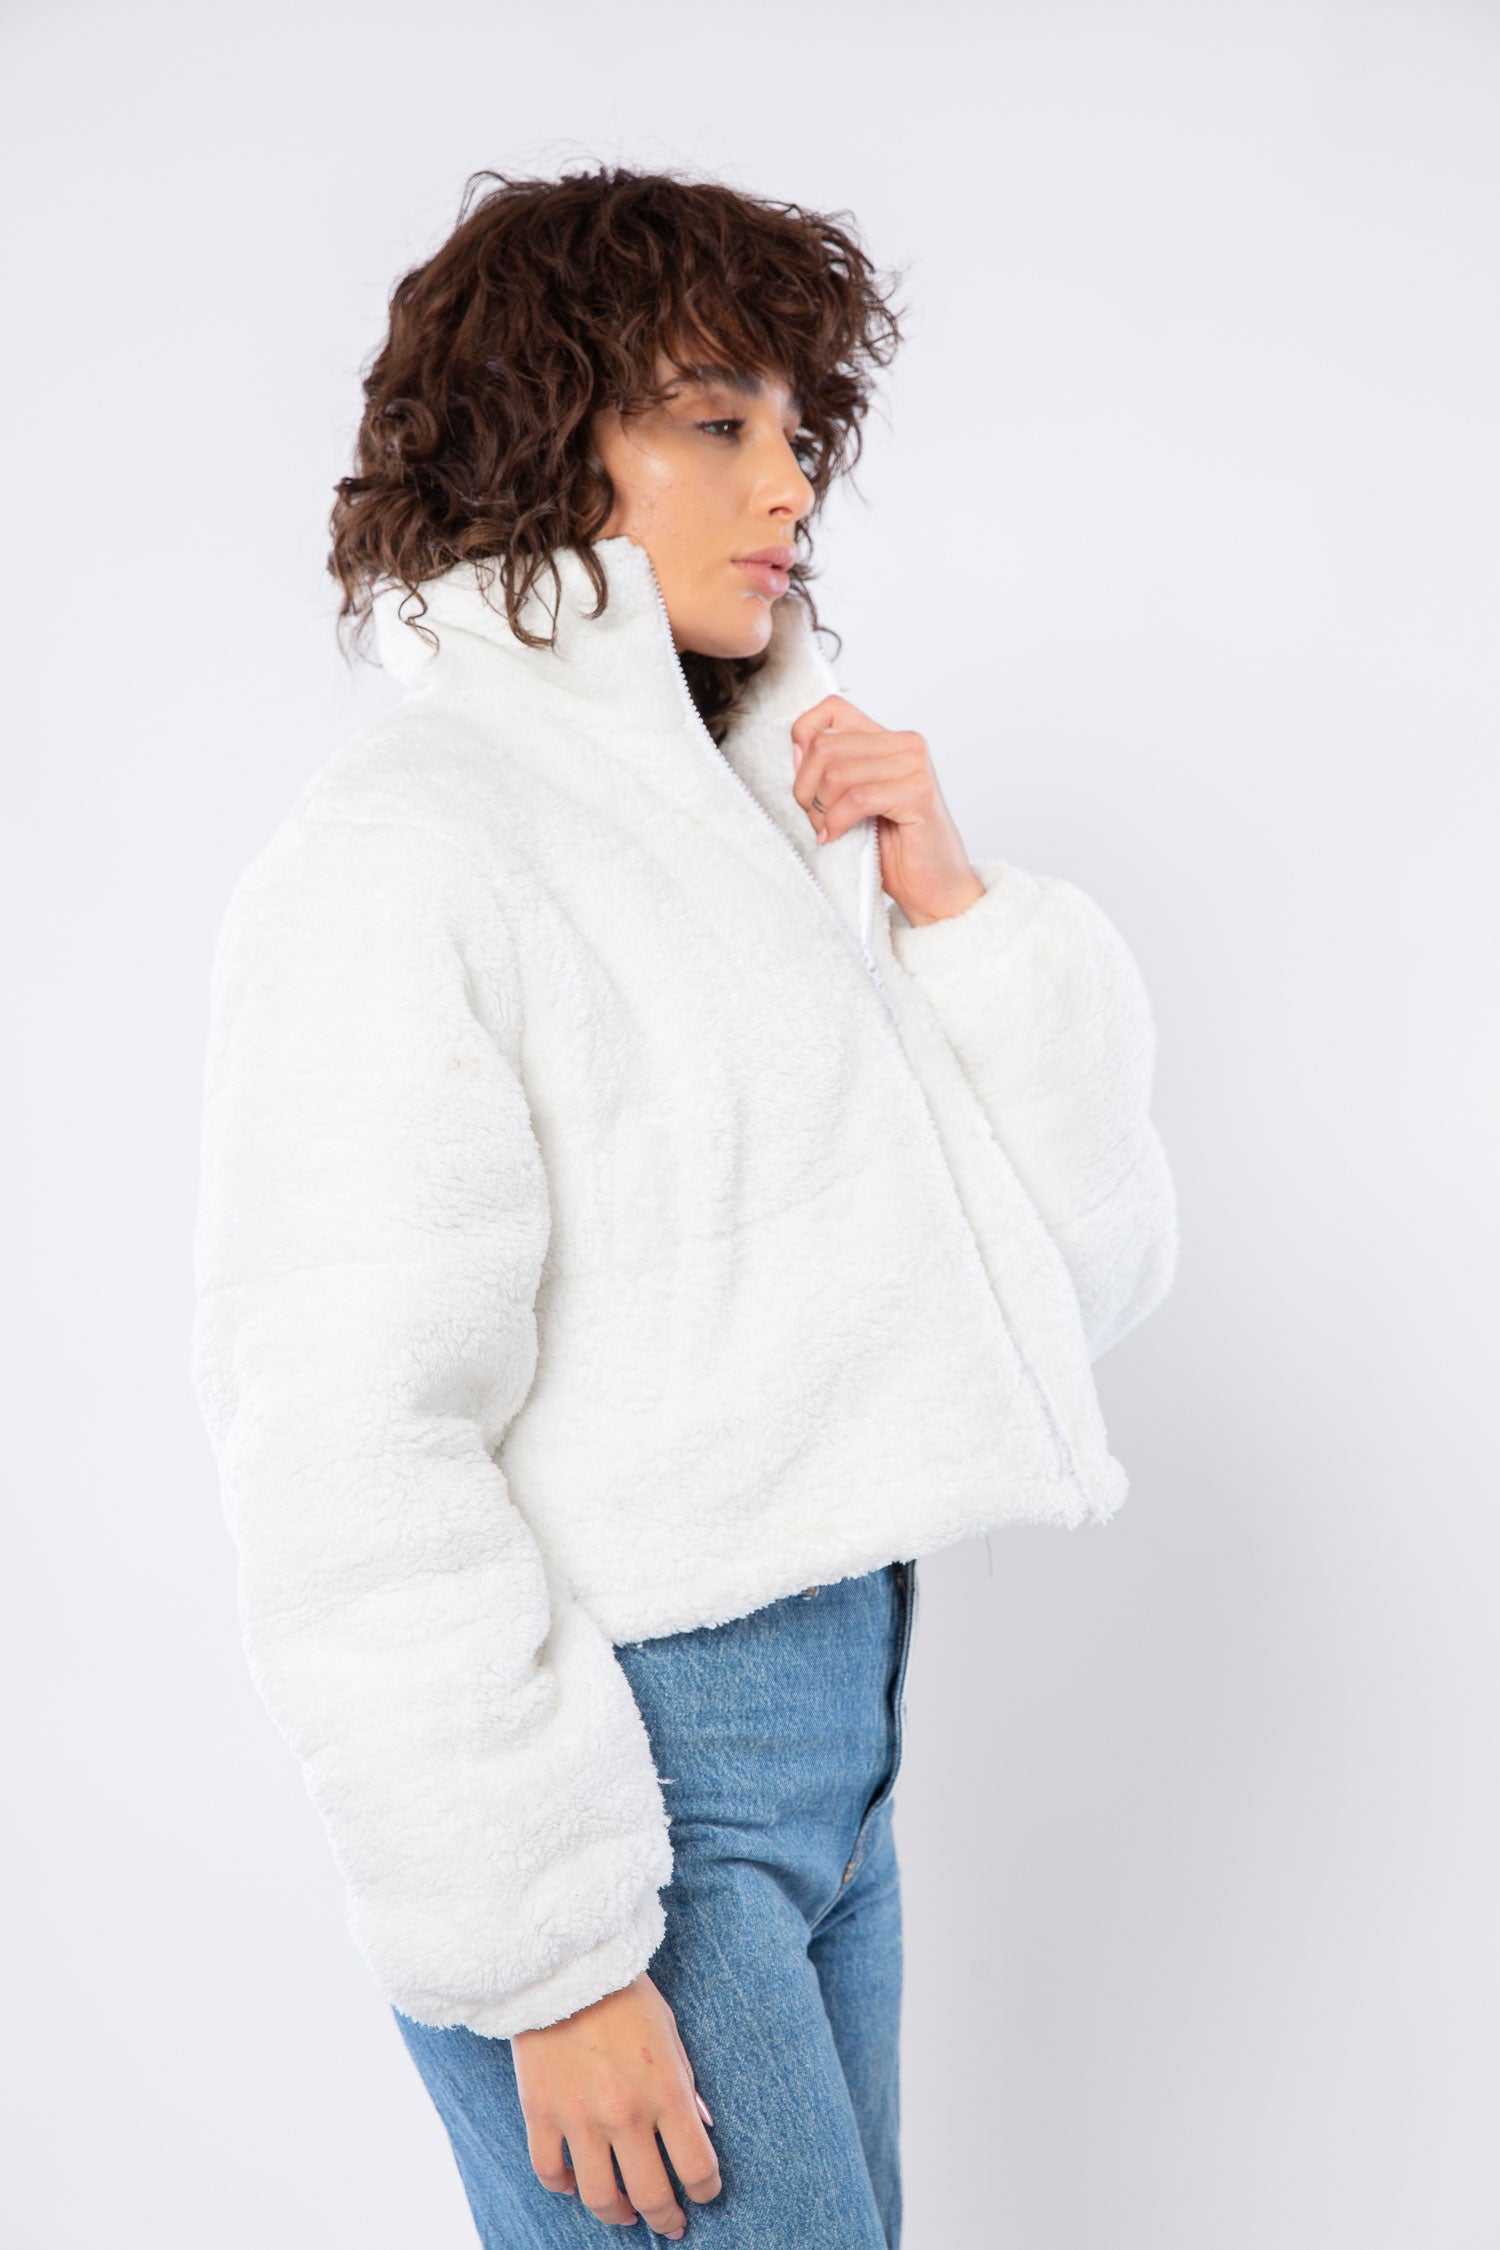 AAP Teddy Bear Coat for Men Winter Warm Plush Fluffy Hooded Jacket Outwear  M Apricot : Amazon.co.uk: Fashion